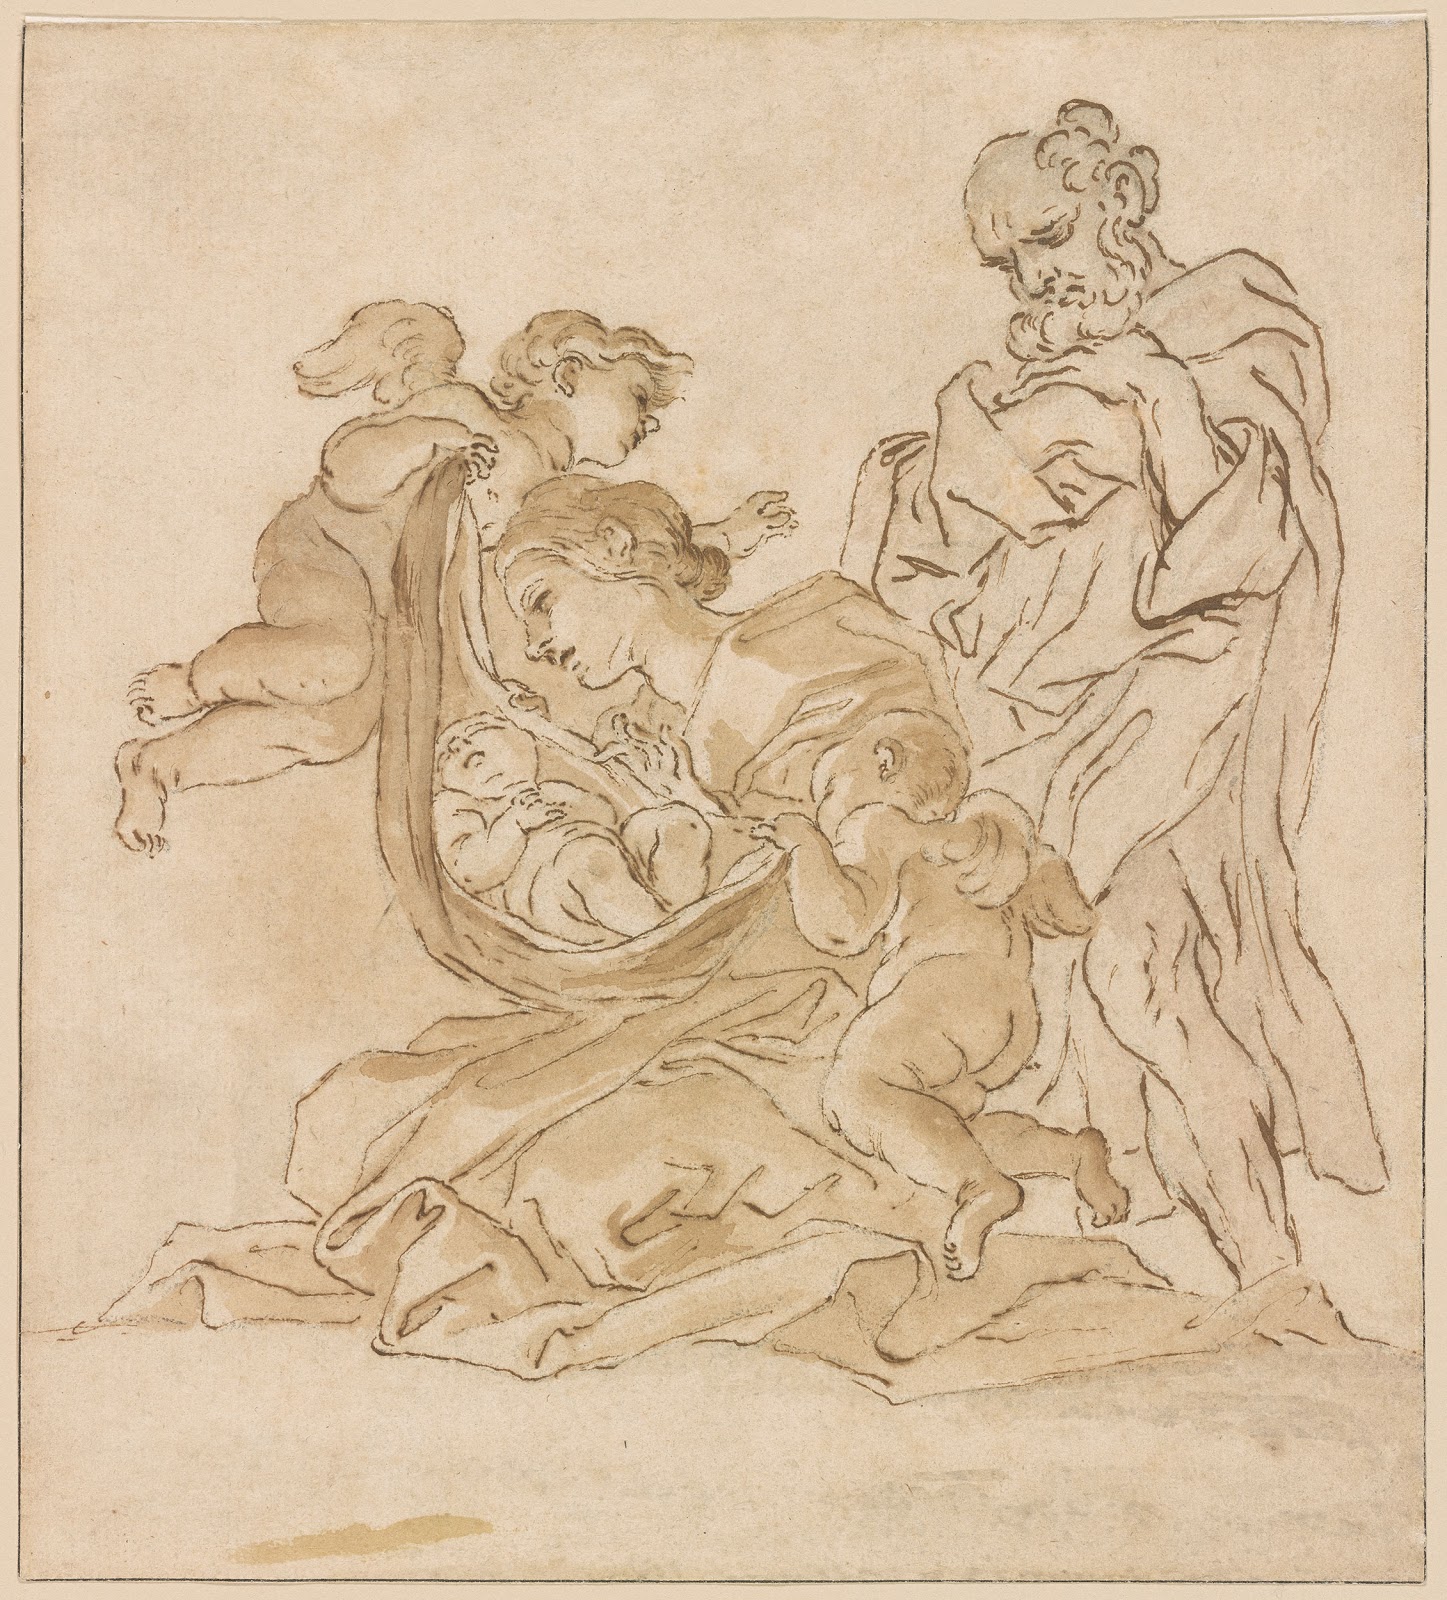 Gian+Lorenzo+Bernini-1598-1680 (129).jpg